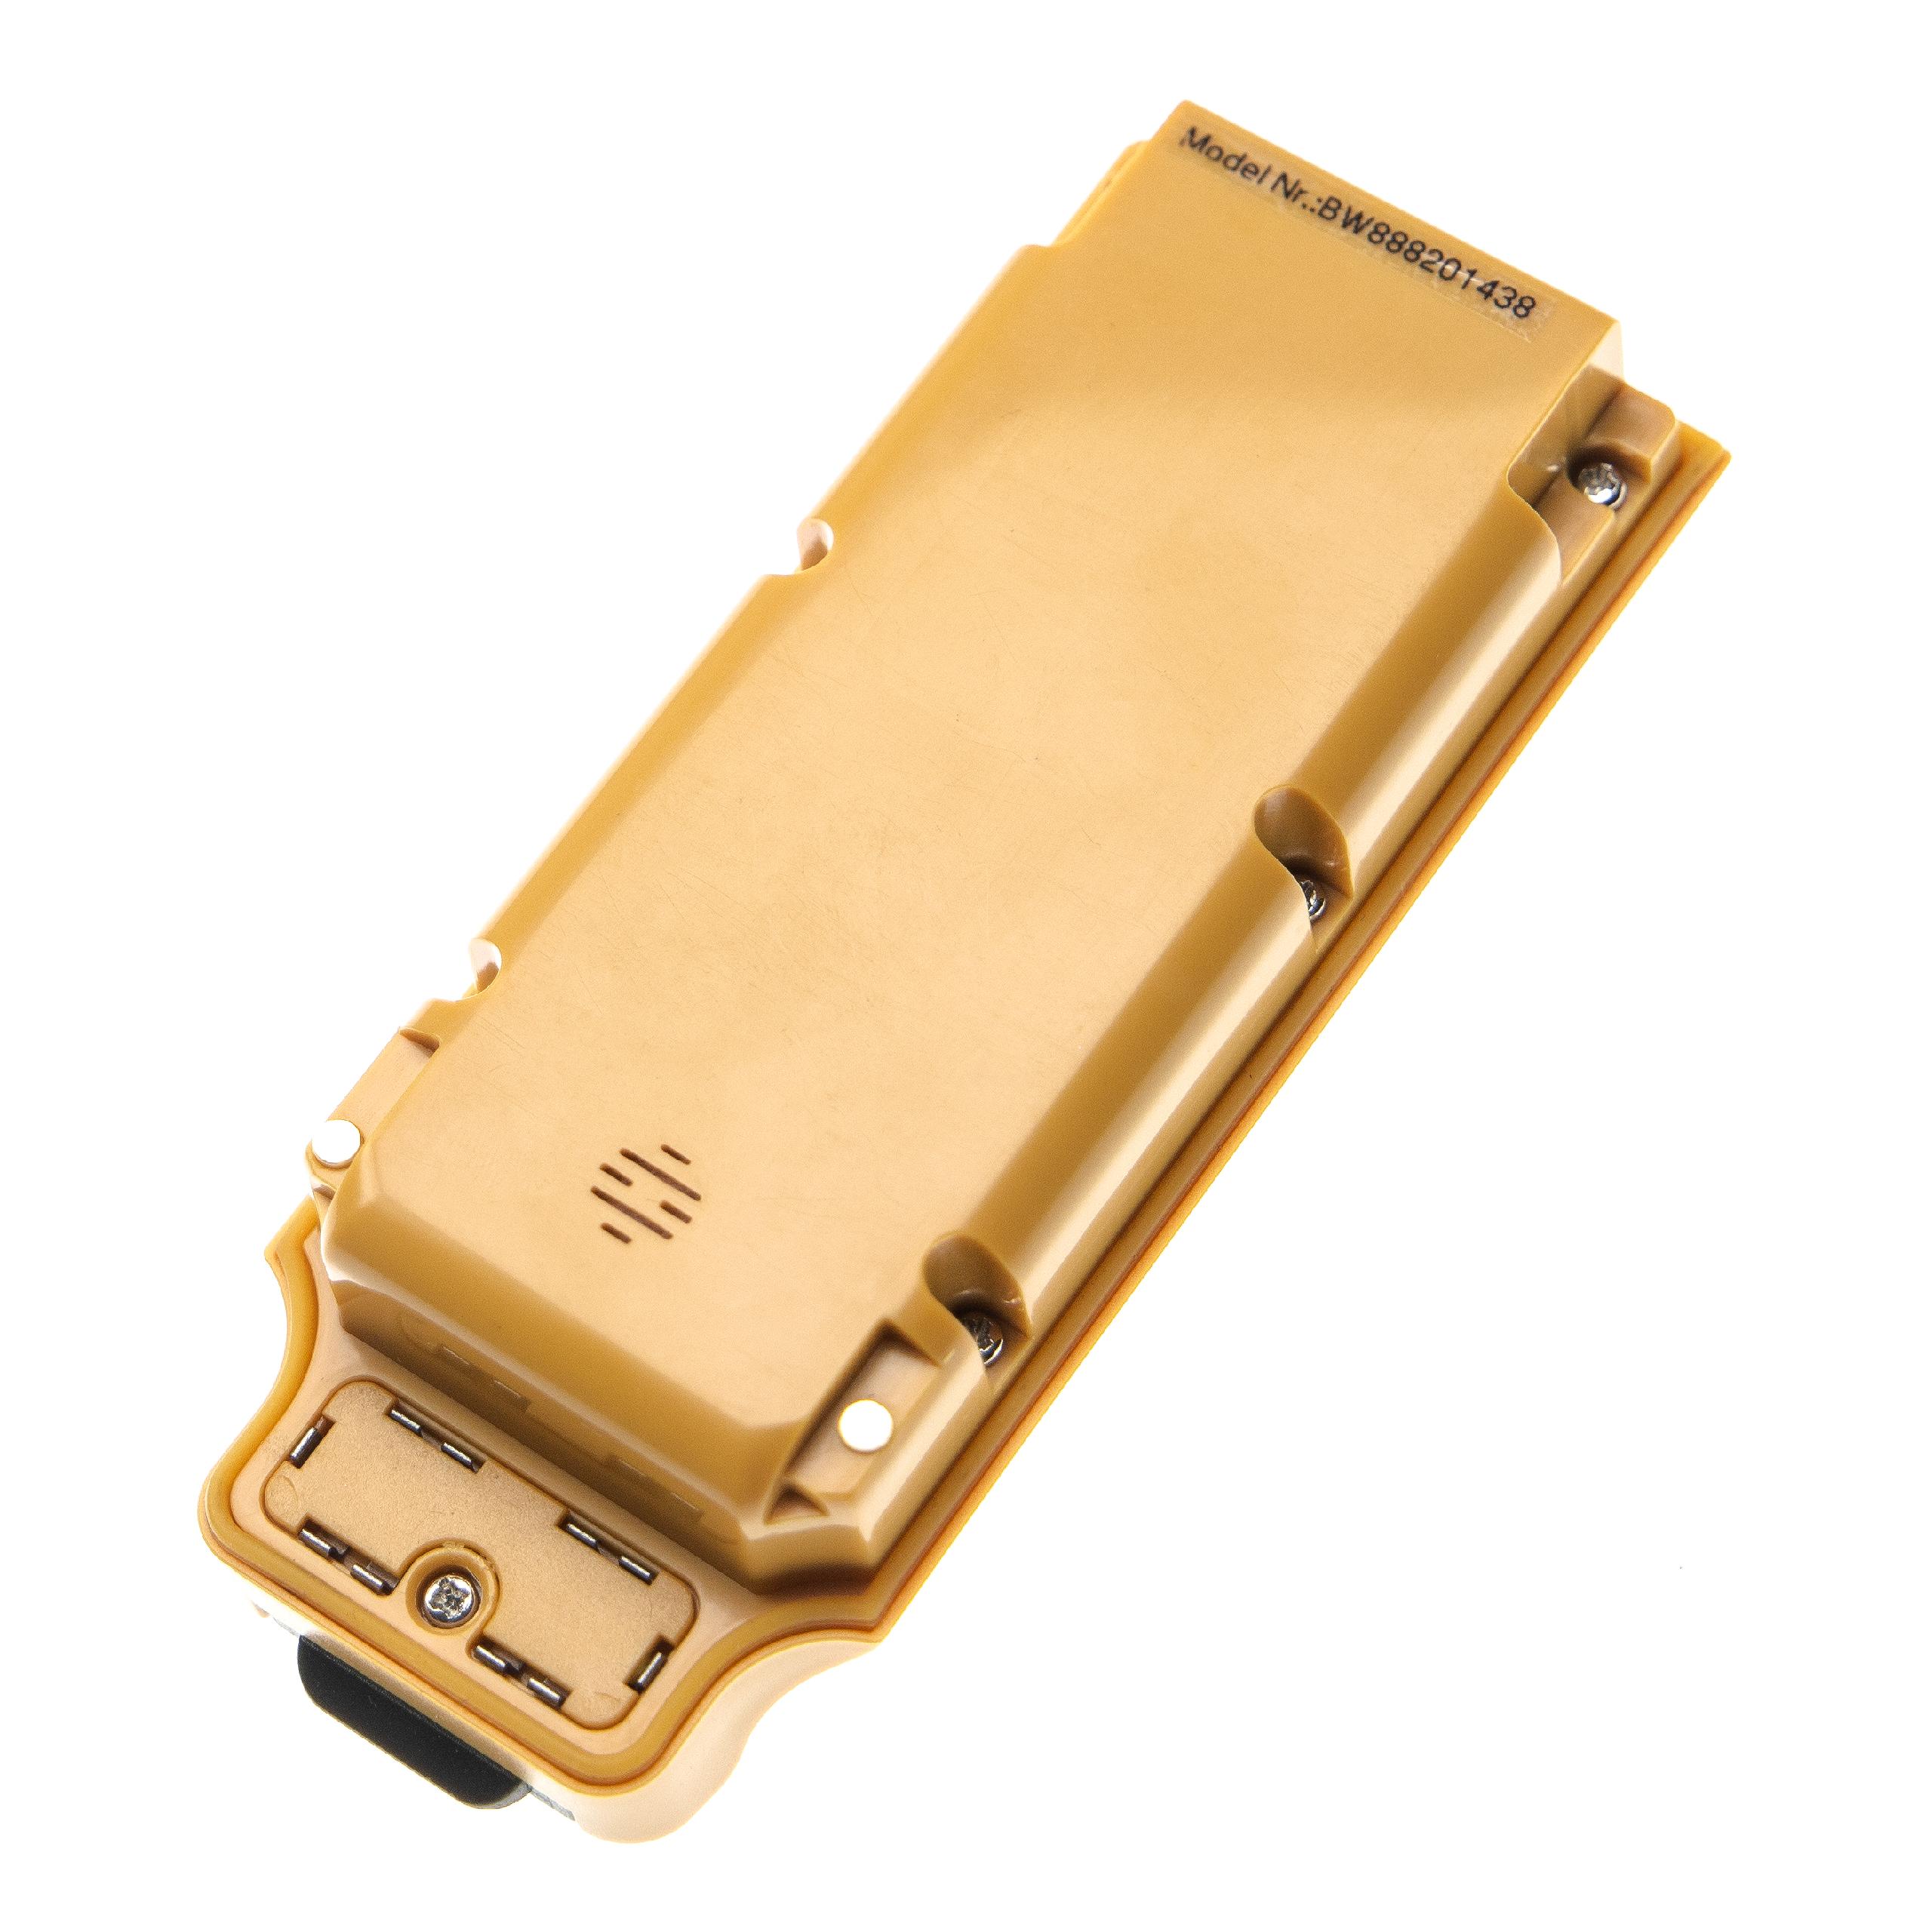 Batería reemplaza Topcon 02-850901-02 para dispositivo medición Topcon - 3900 mAh 7,2 V Li-Ion